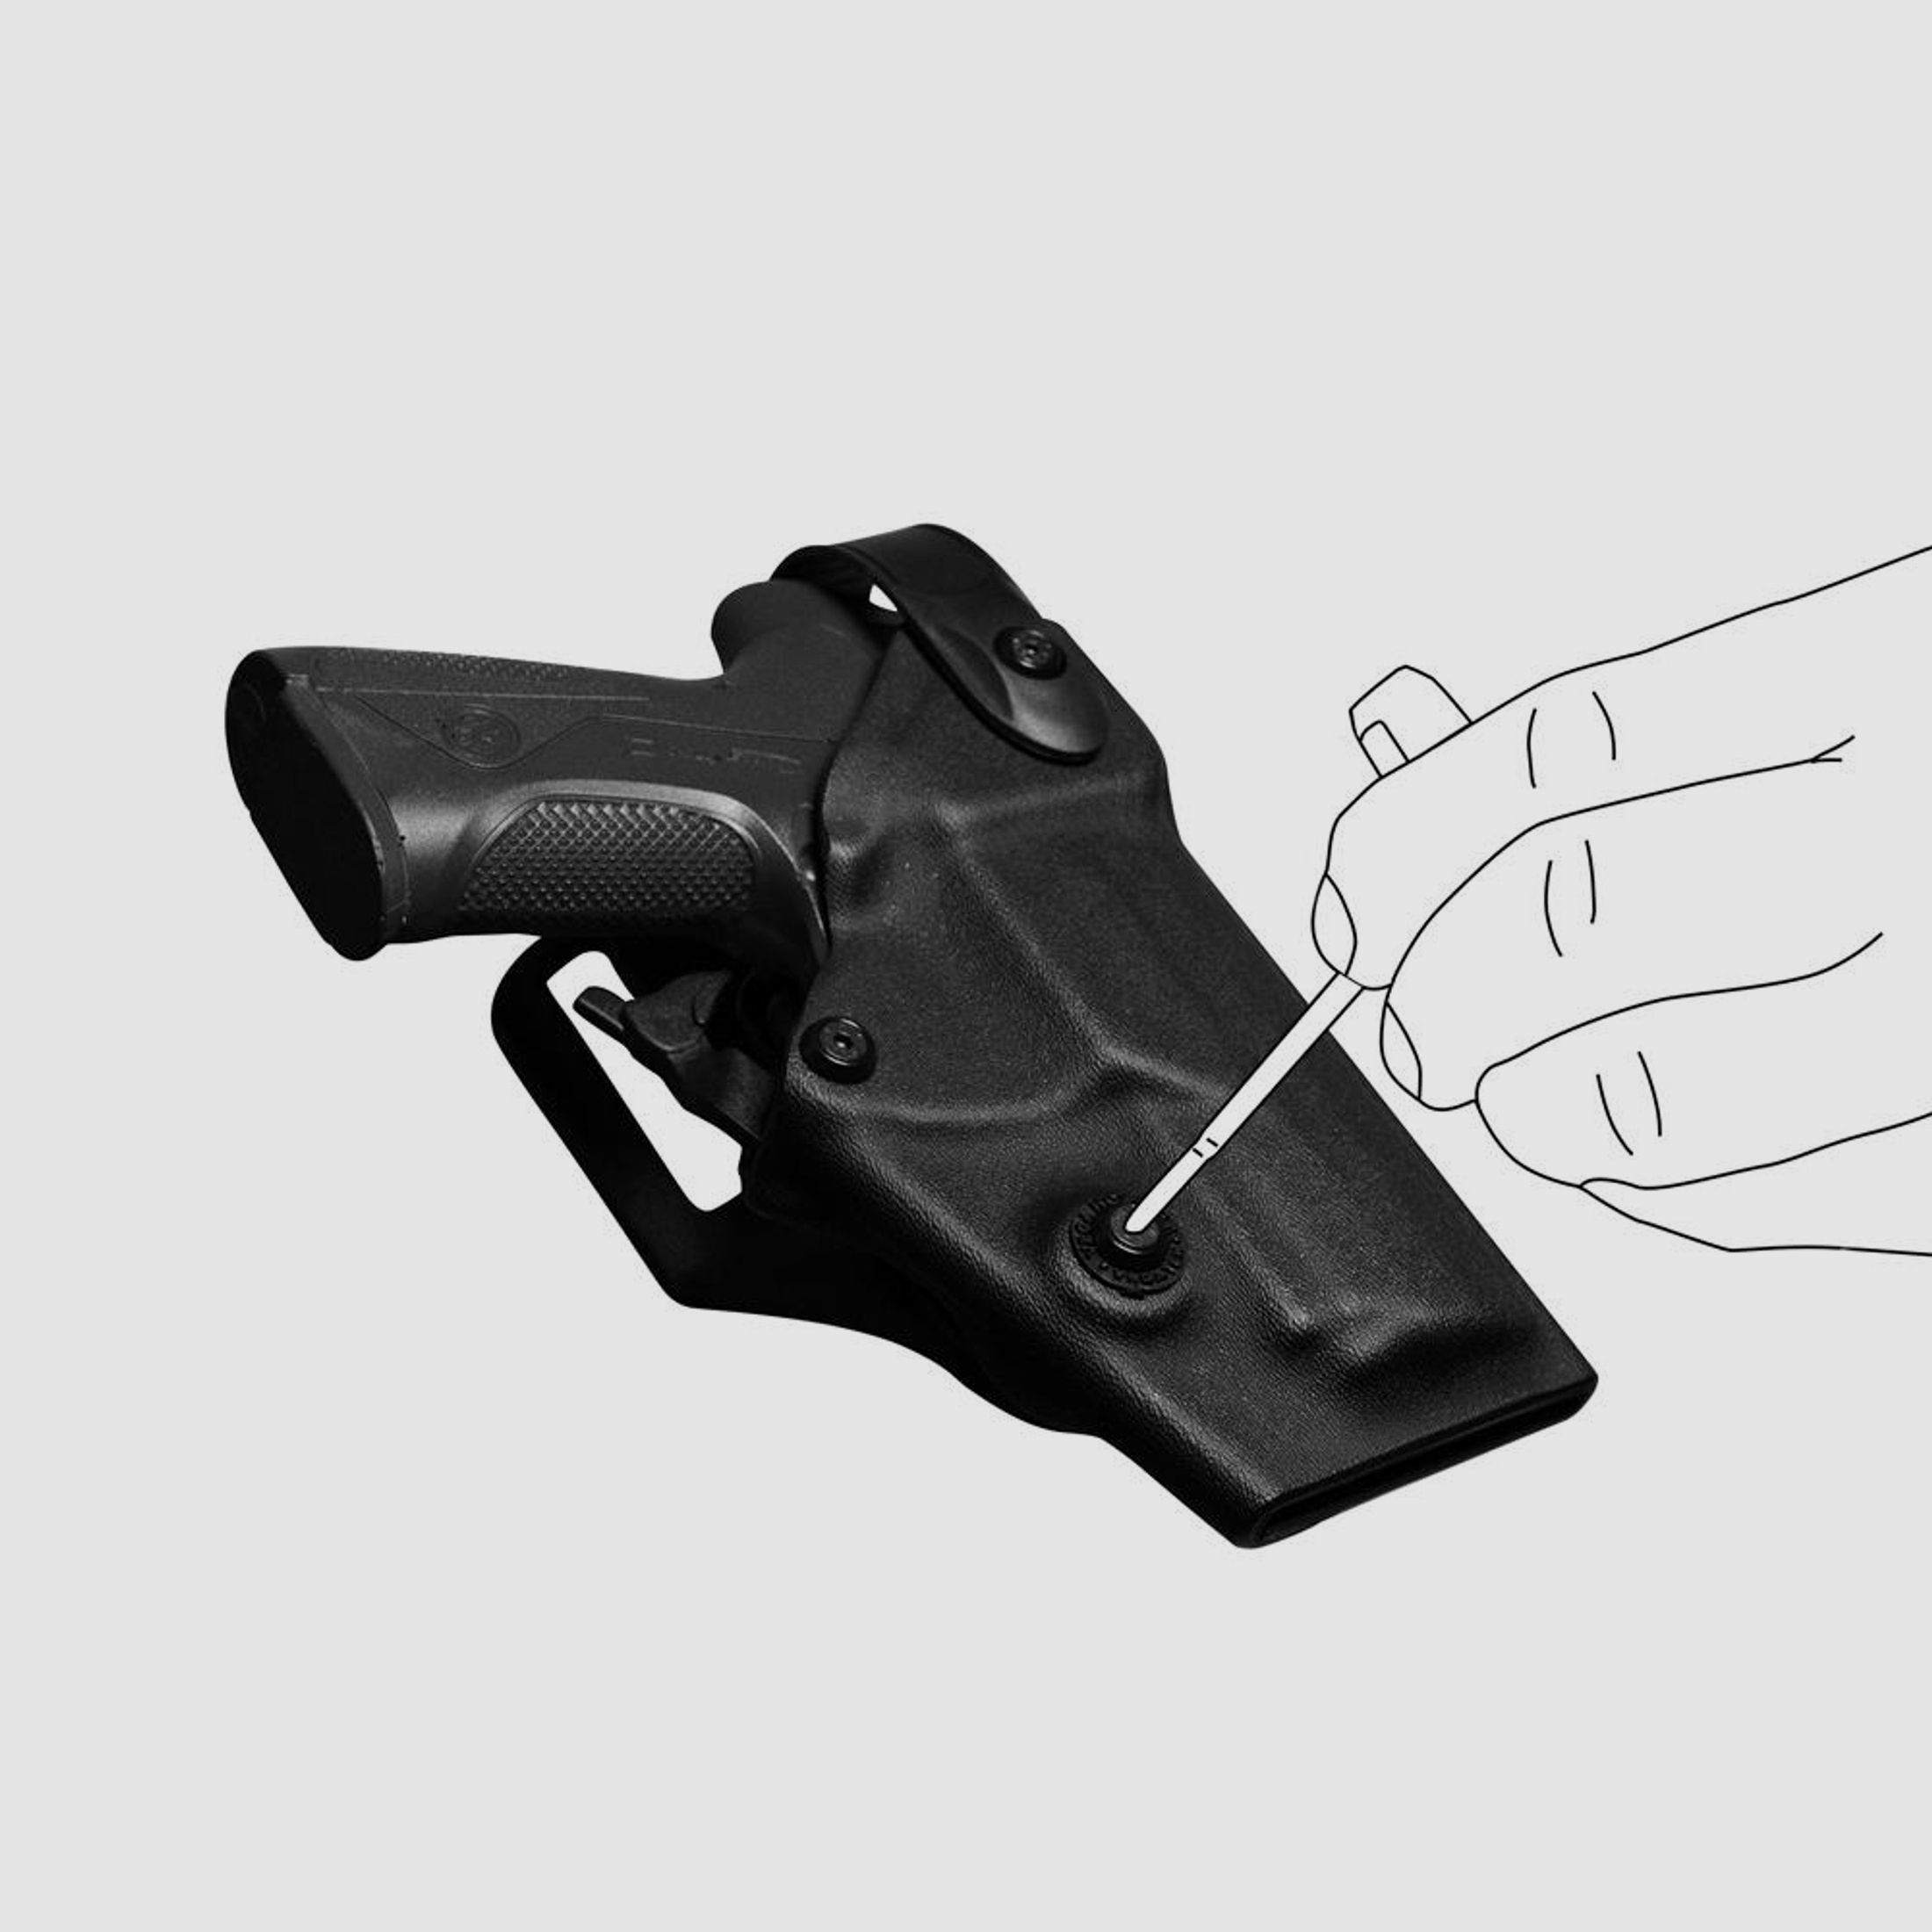 Polymerholster “RESCUE” mit Sicherung Beretta PX4 Storm / Compact Rechtshänder